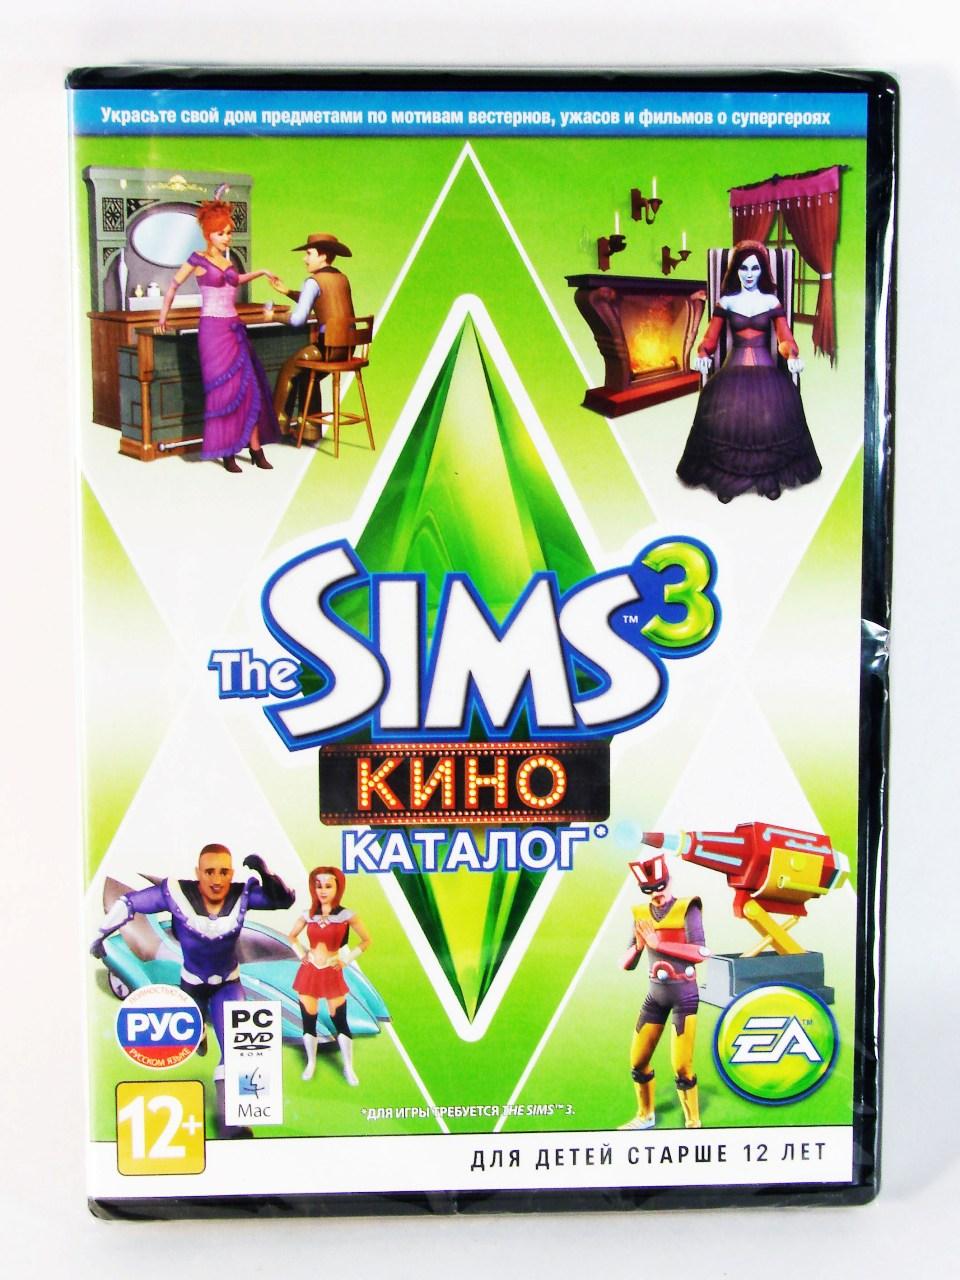 Компьютерный компакт-диск Sims 3 Кино (ПК), фирма "Electronic Arts", 1DVD